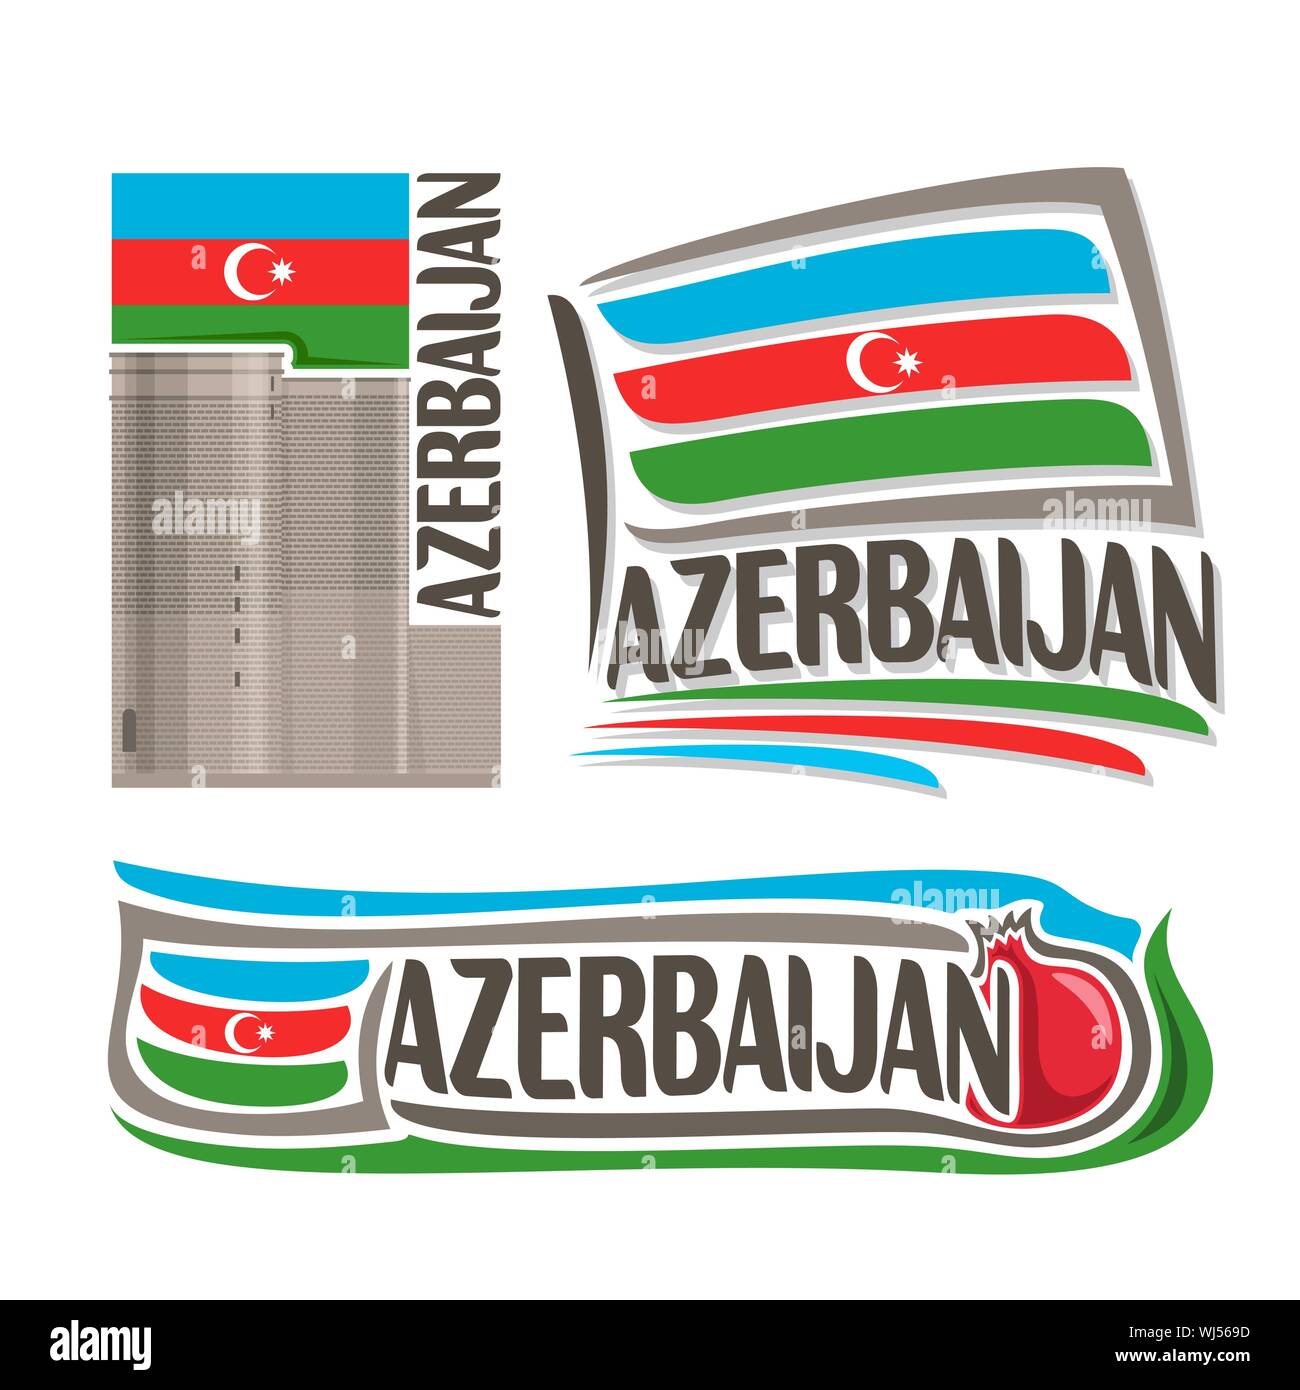 Vektor logo für Aserbaidschan, 3 isolierte Illustrationen: Maiden Tower in Baku am Hintergrund der nationalen State Flag, Symbol der Aserbaidschan Architektur und Stock Vektor